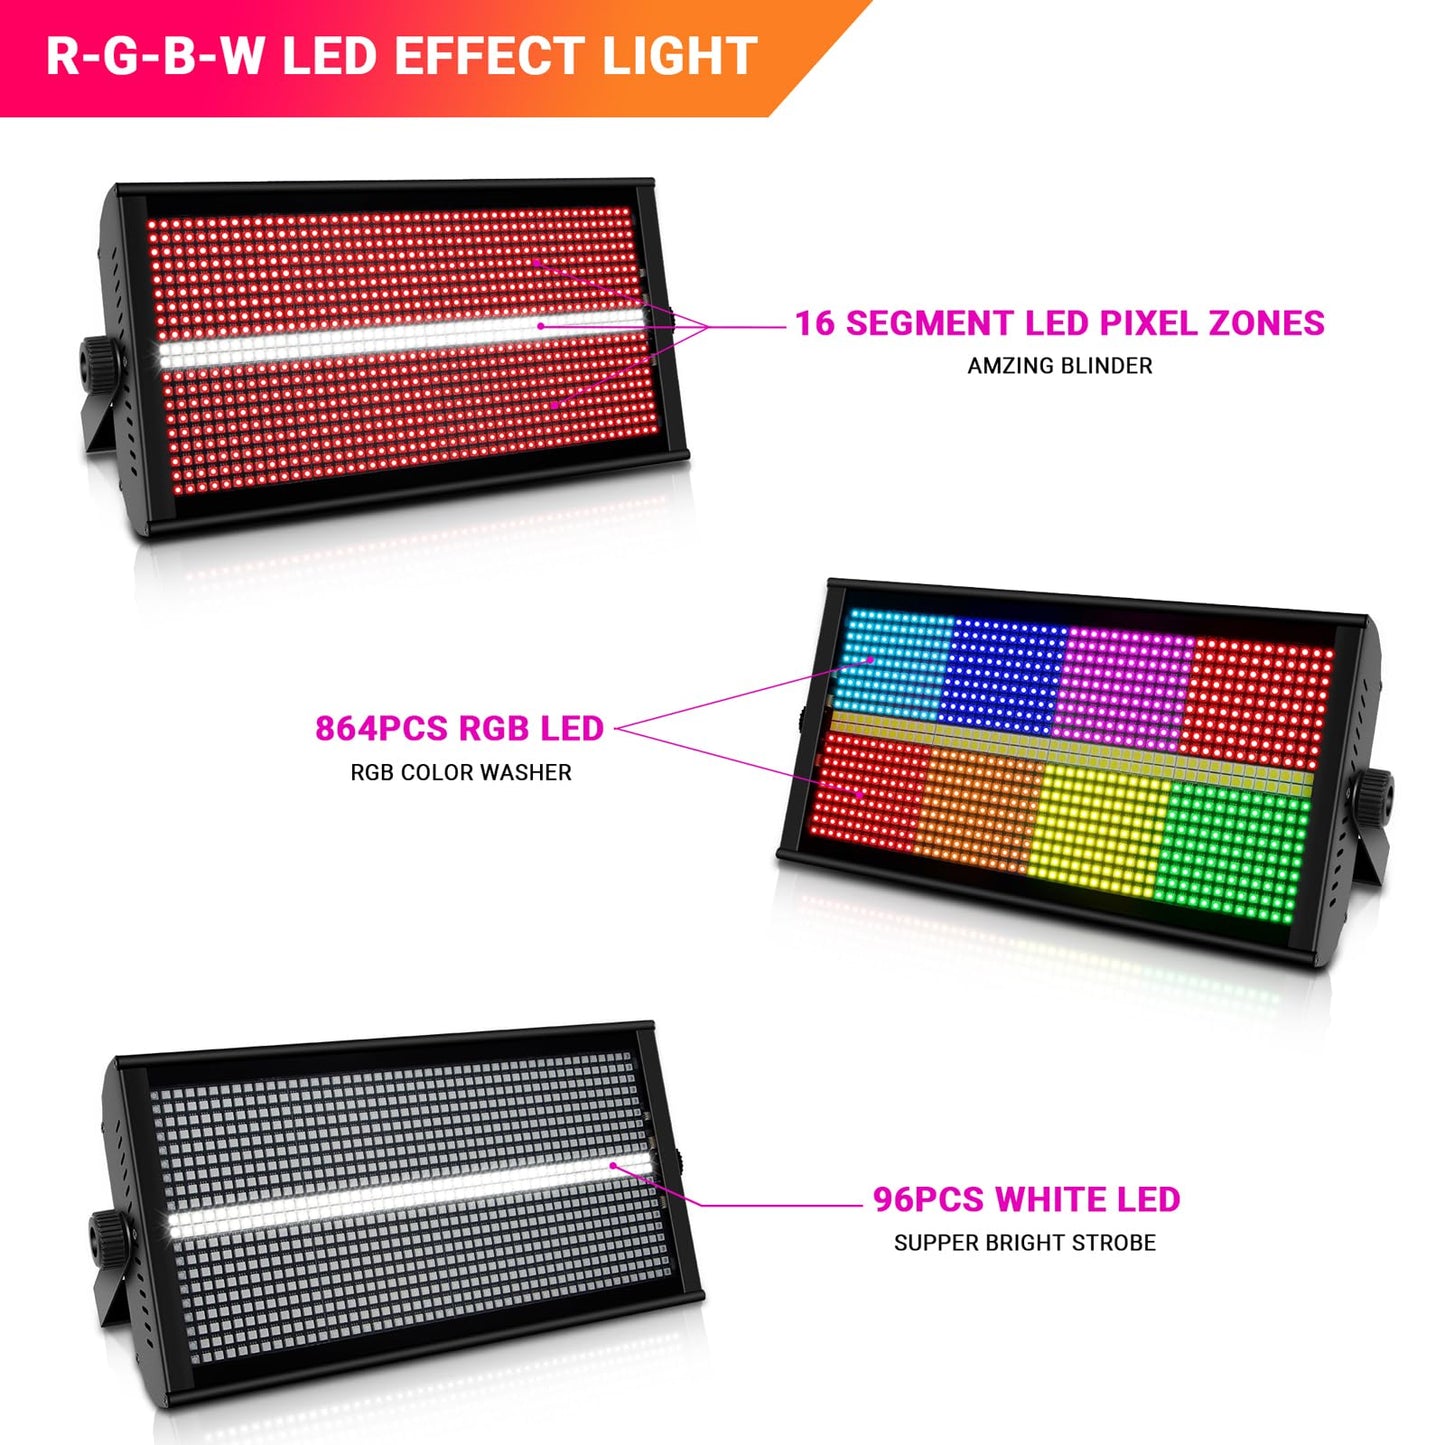 500W 960LED RGB+W DJ Strobe Light Zone Control for Stage Party Light